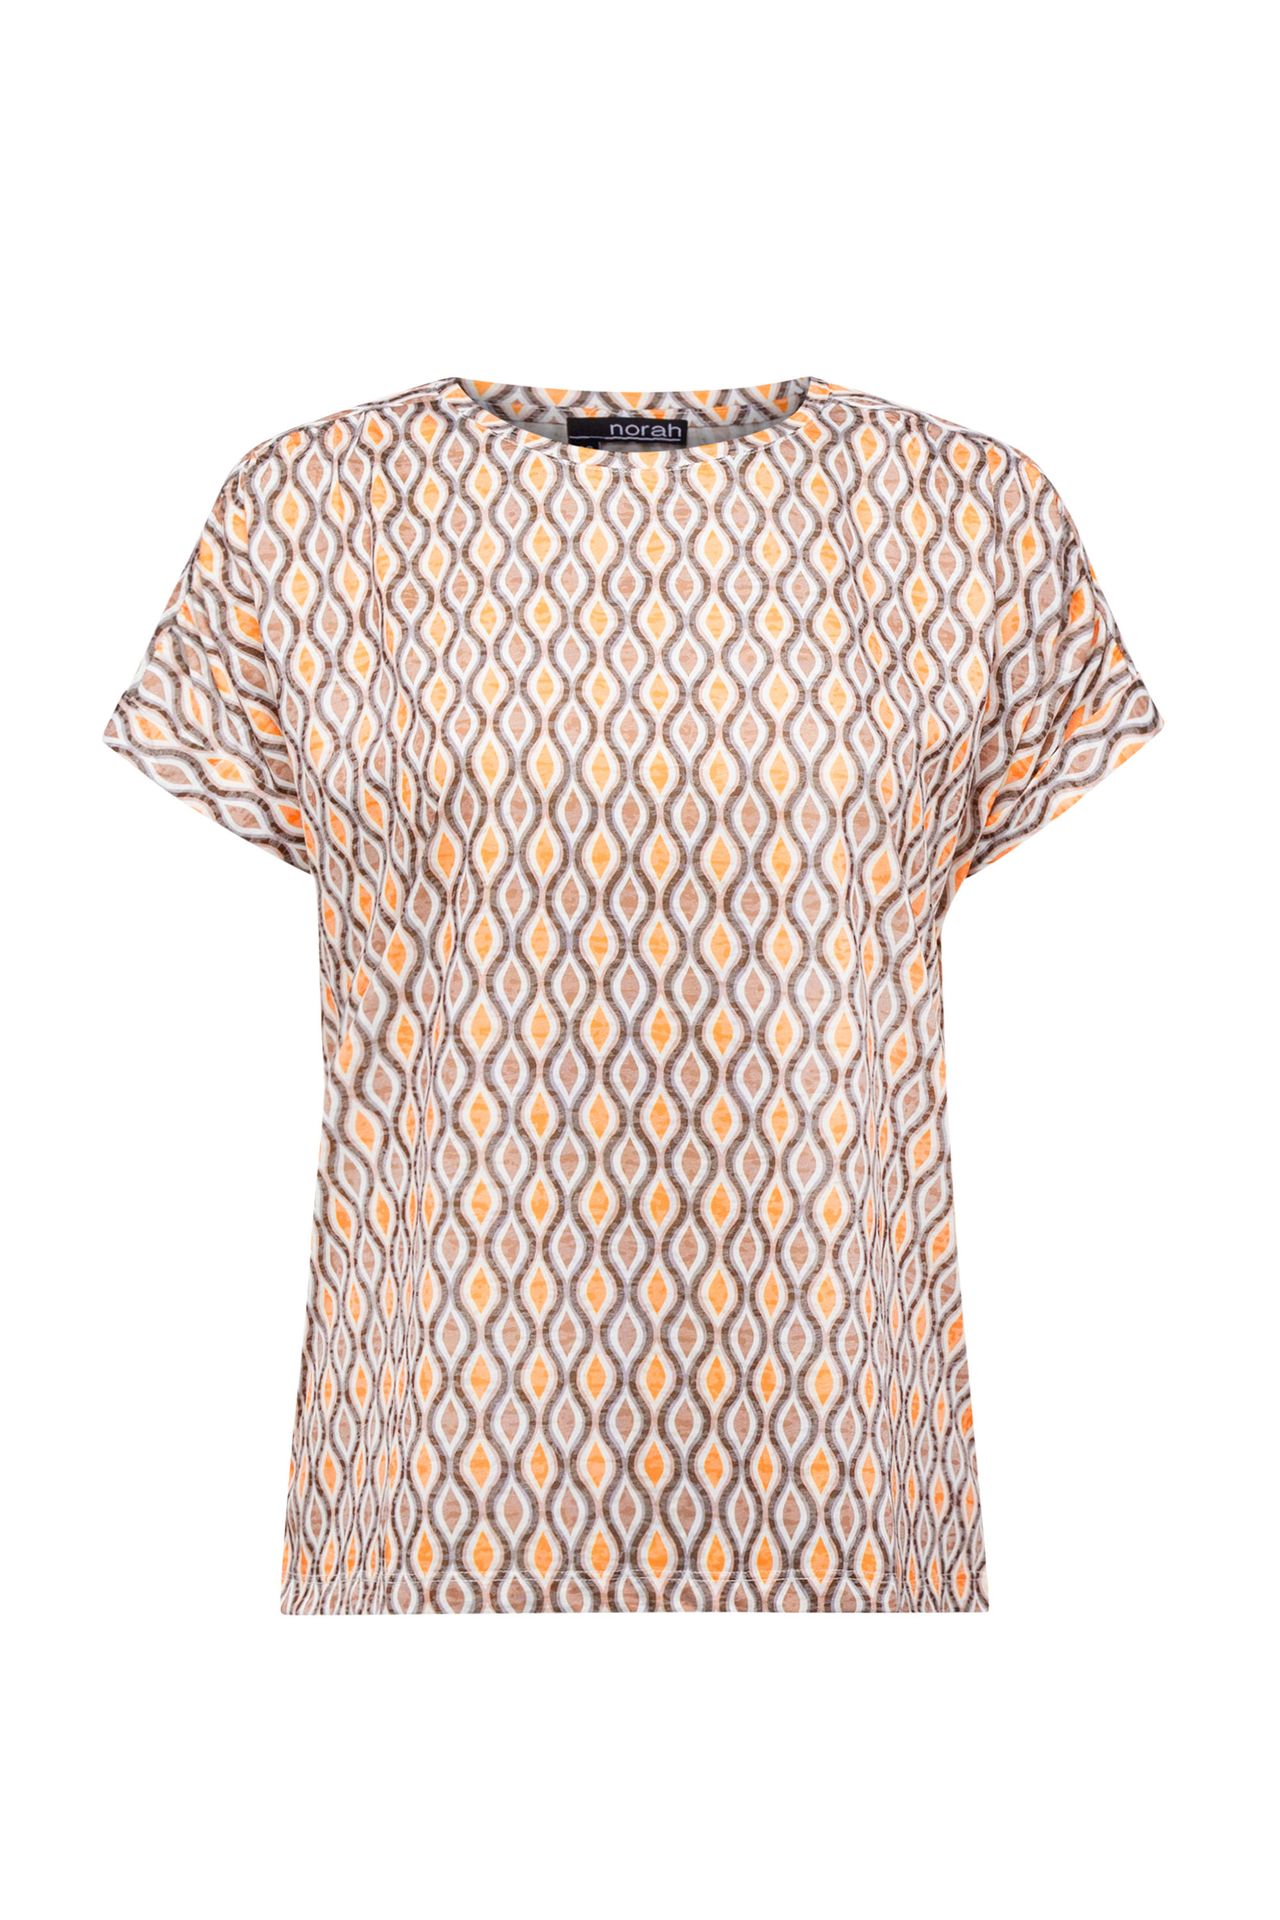 Norah Shirt met grafische print brown/yellow 213849-233